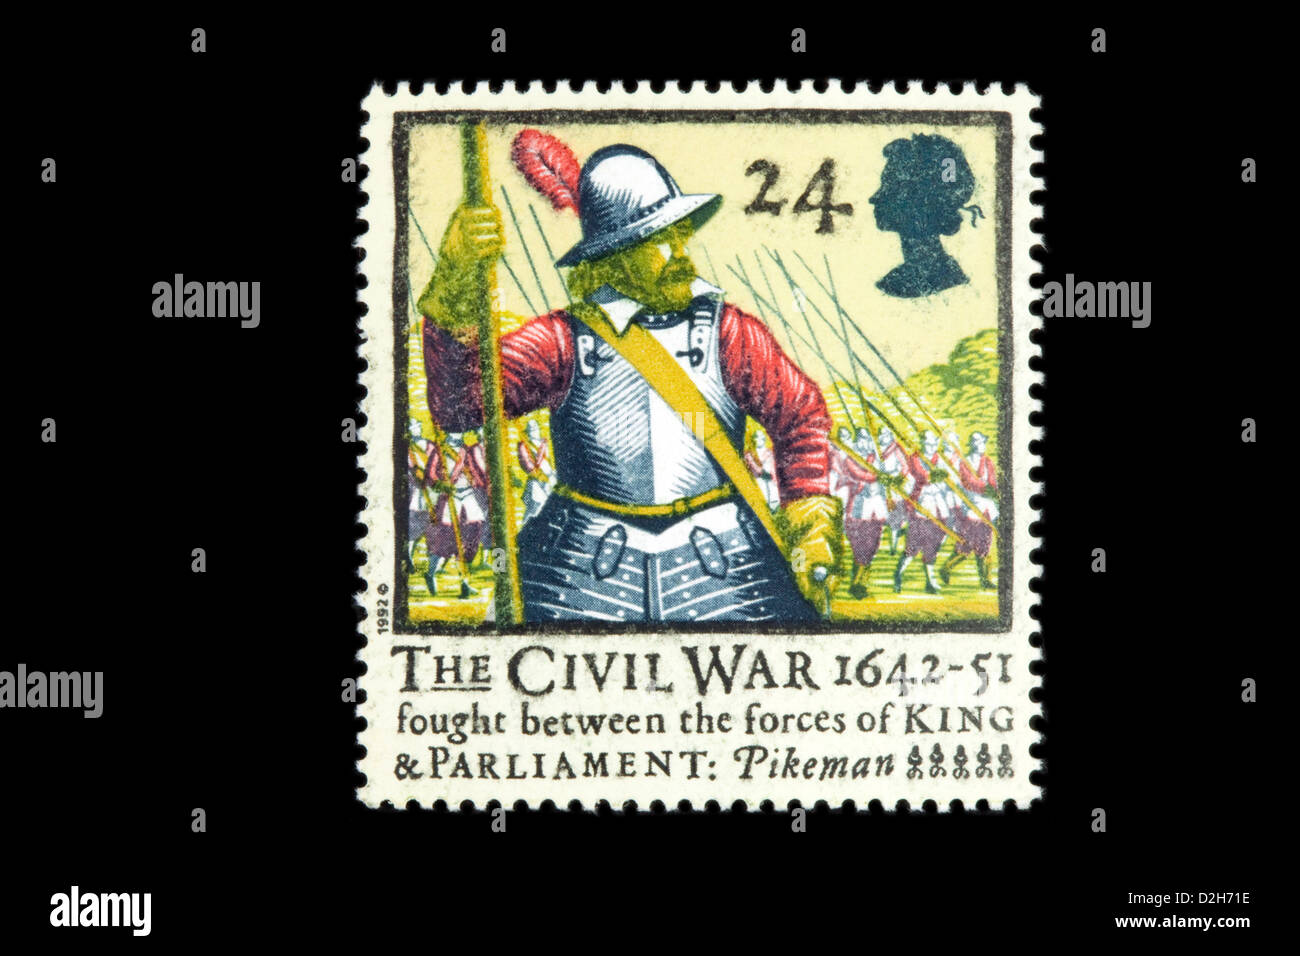 English Civil War, 1642-1651 sur un timbre-poste pour le 350e anniversaire, 1992, UK stamps Banque D'Images